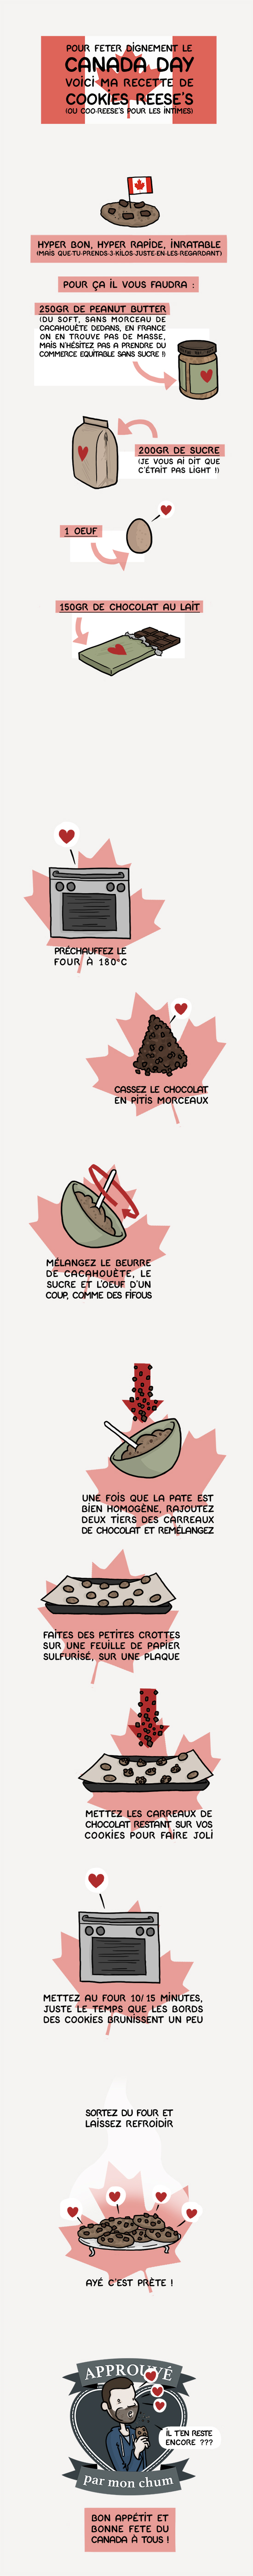 Illustration de l'article " Canada Day et cookies..."